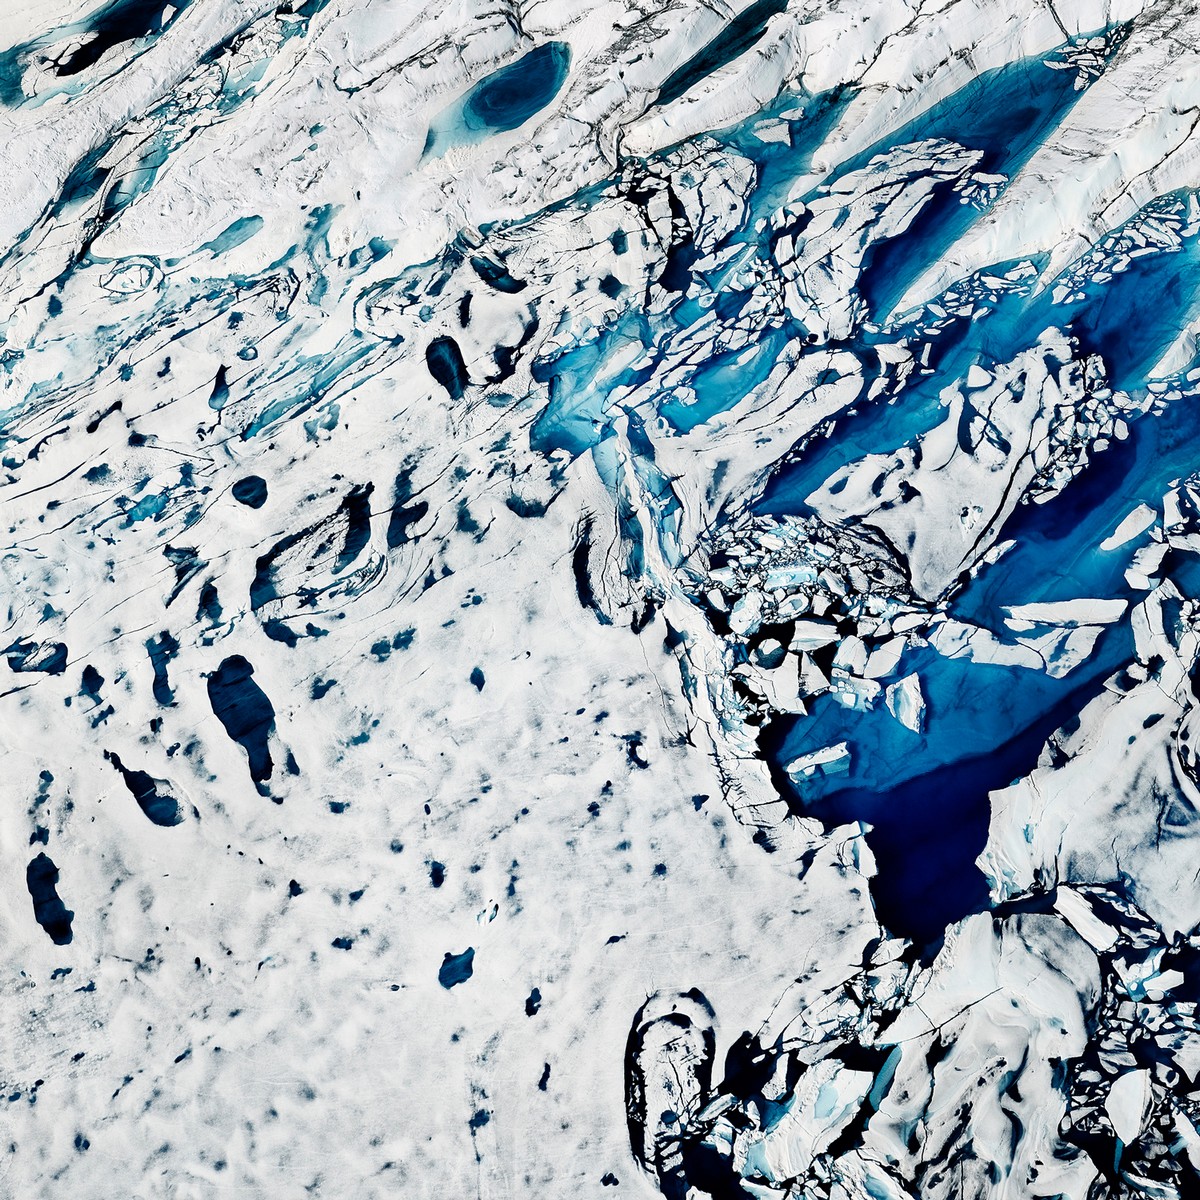 Хрупкая красота тающих арктических льдов